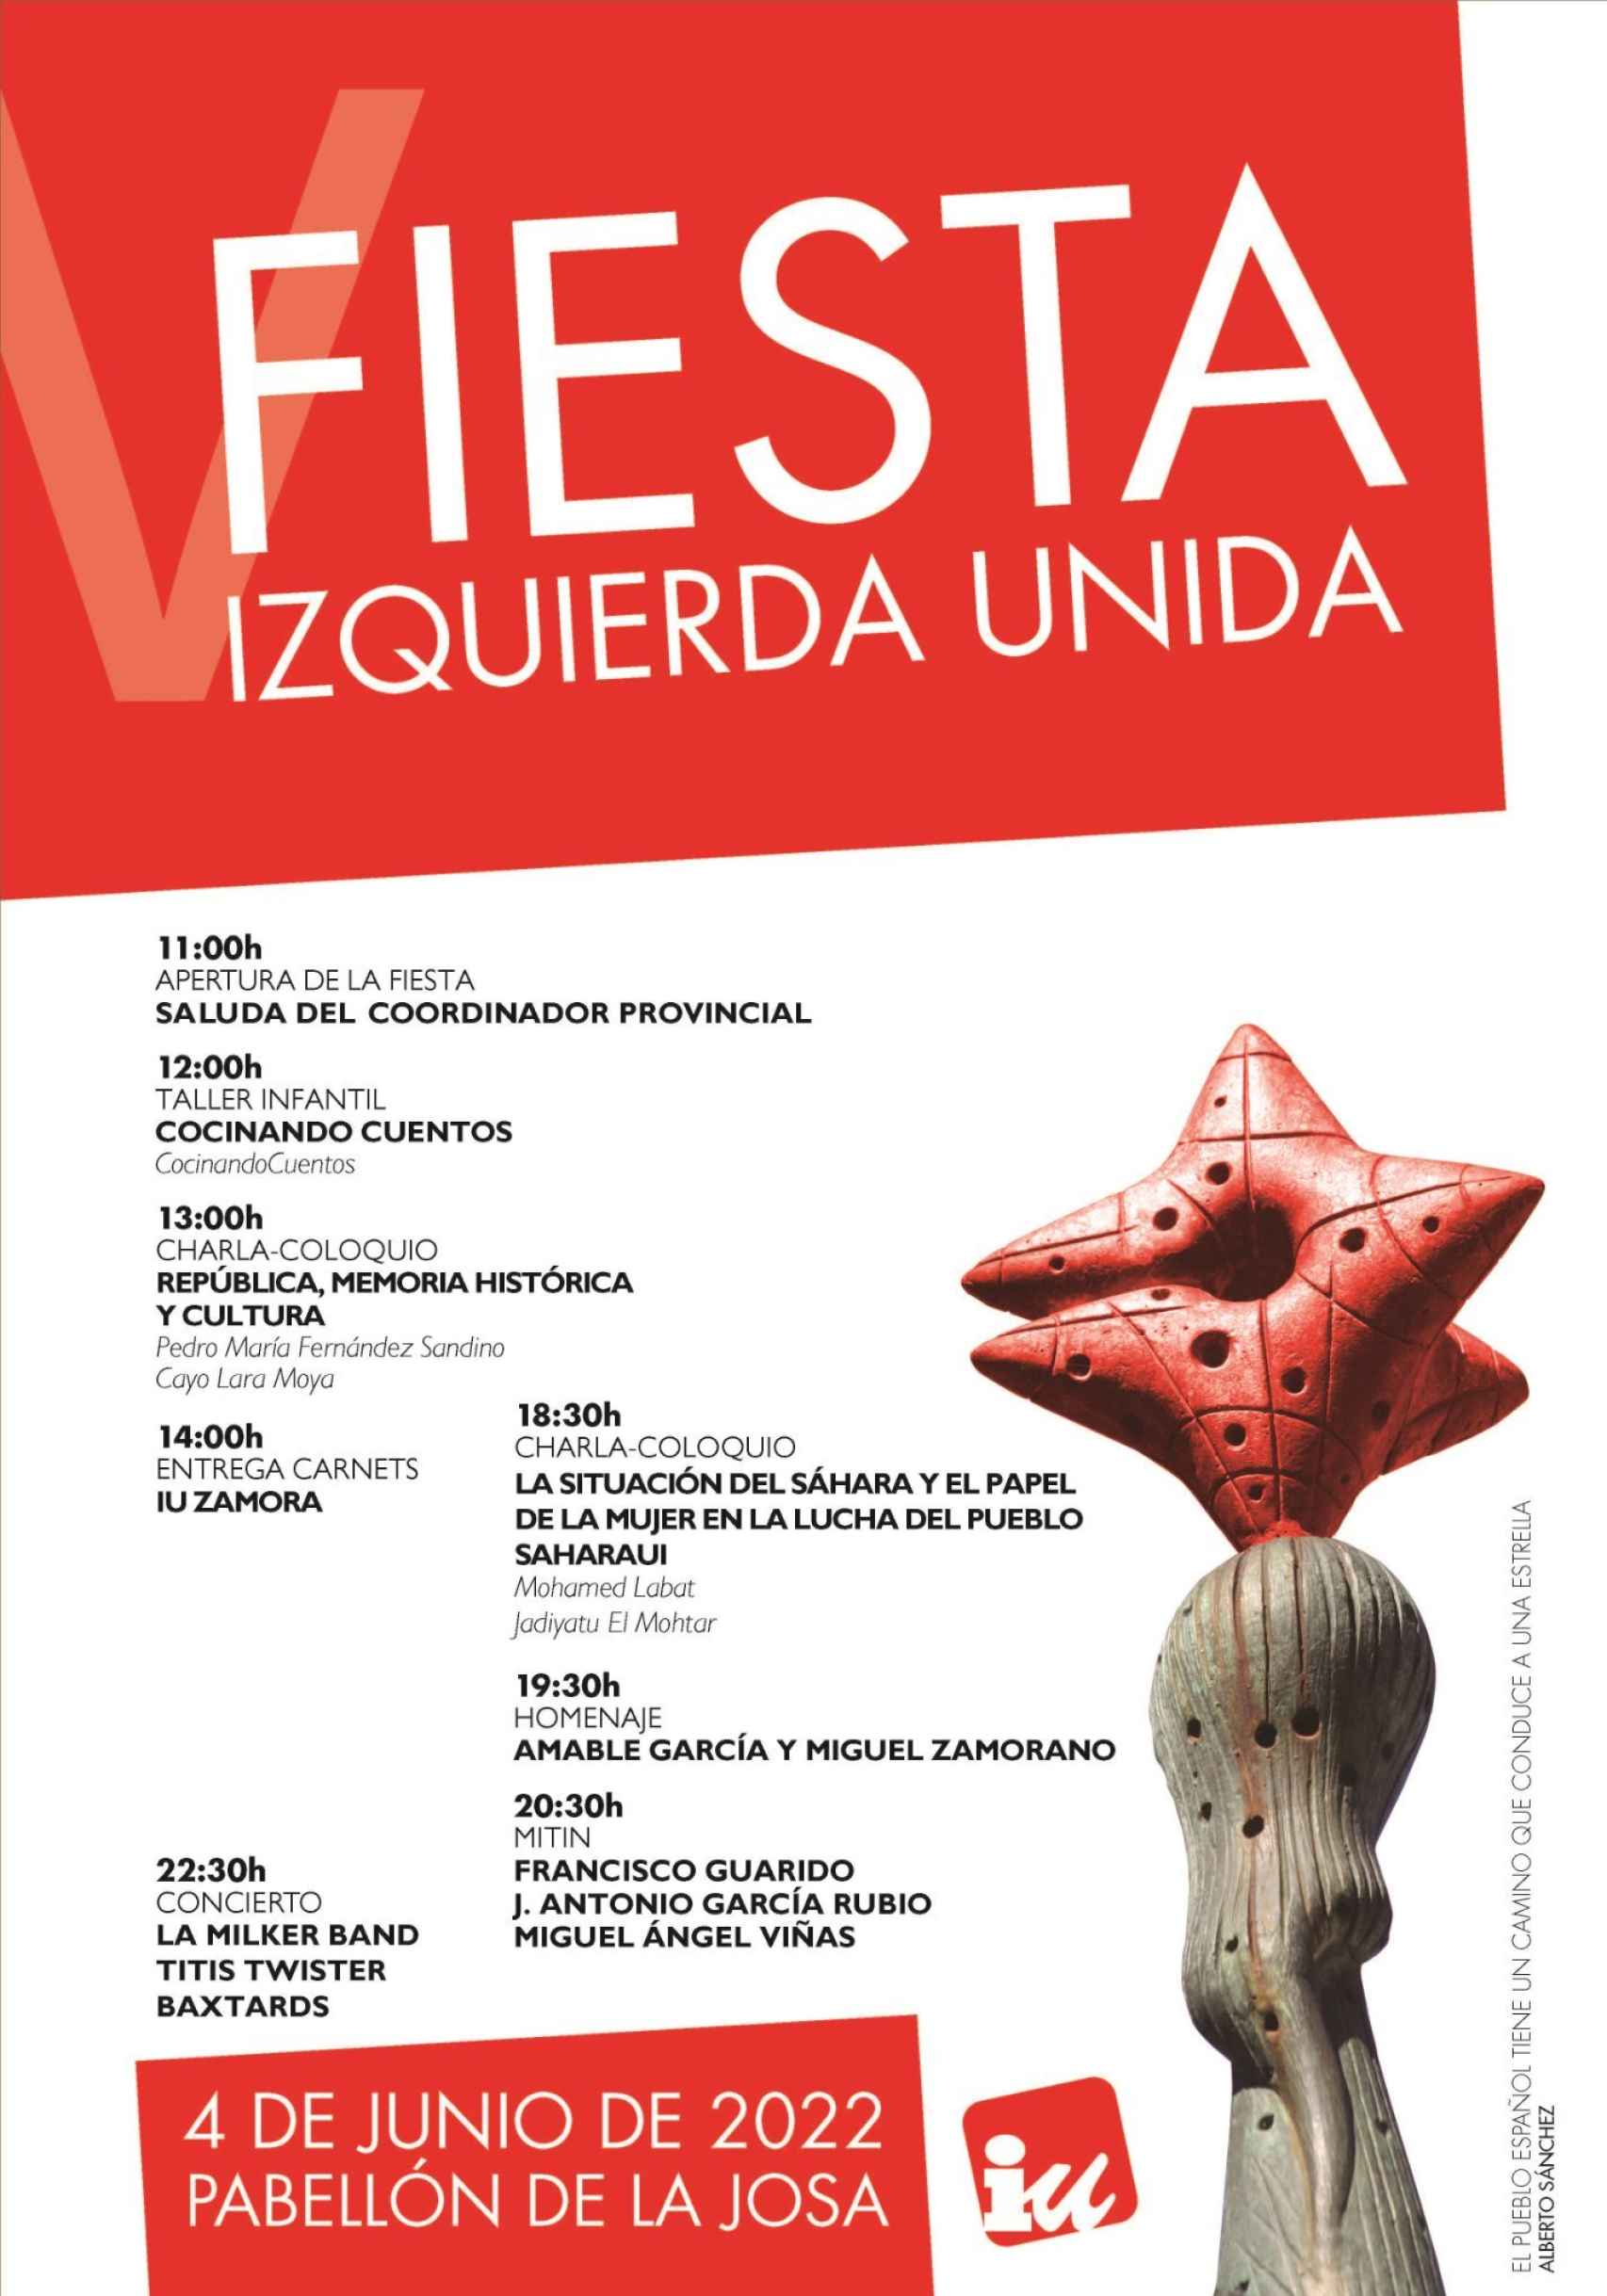 Cartel complejo de la V Fiesta de IU Zamora